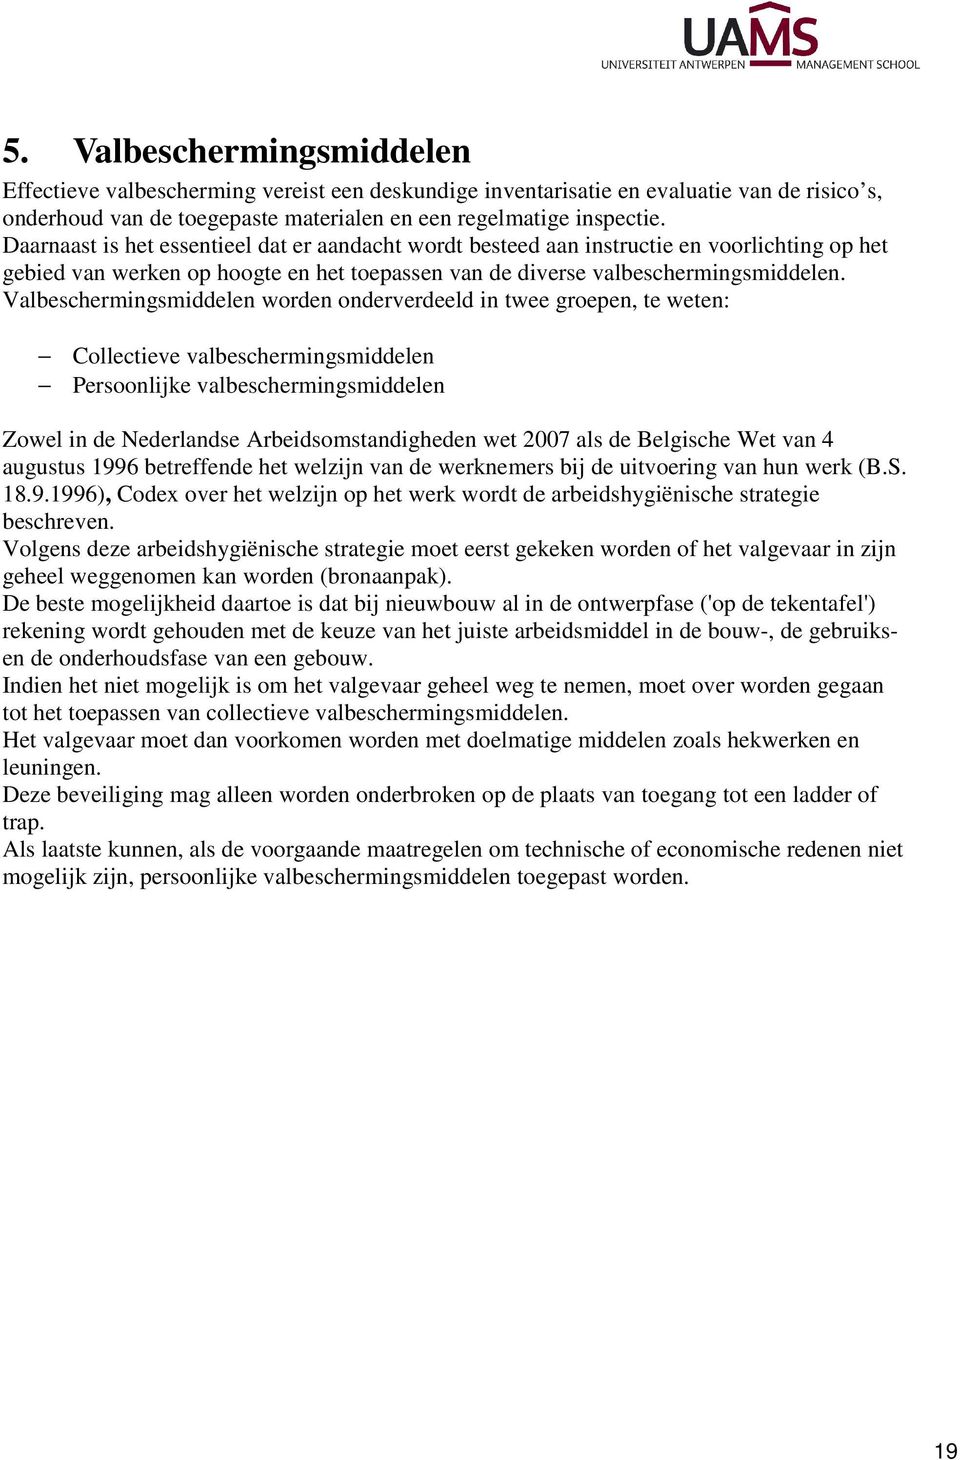 Valbeschermingsmiddelen worden onderverdeeld in twee groepen, te weten: Collectieve valbeschermingsmiddelen Persoonlijke valbeschermingsmiddelen Zowel in de Nederlandse Arbeidsomstandigheden wet 2007